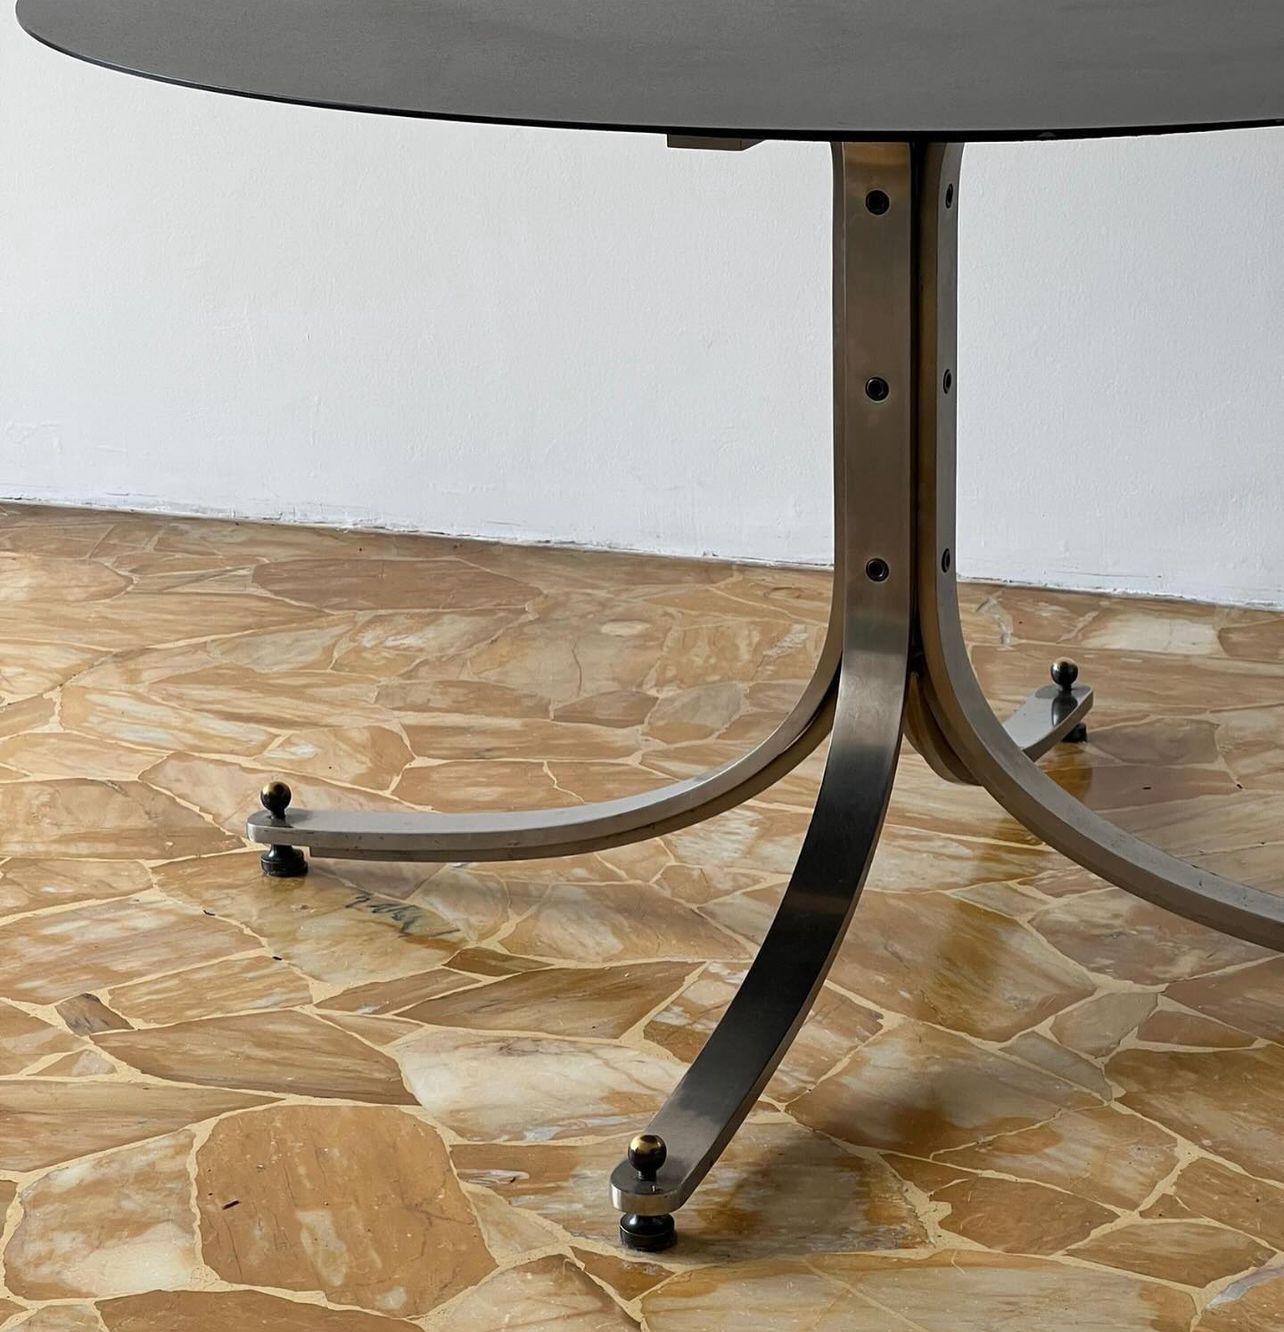 Skulpturaler Esstisch - Italienisches Collectional Design - Sergio Mazza Tisch aus Edelstahl

Schöner und zeitloser Esstisch, entworfen von Sergio Mazza für die italienische Möbelmarke Arflex im Jahr 1962. Die vier Beine sind aus gebürstetem